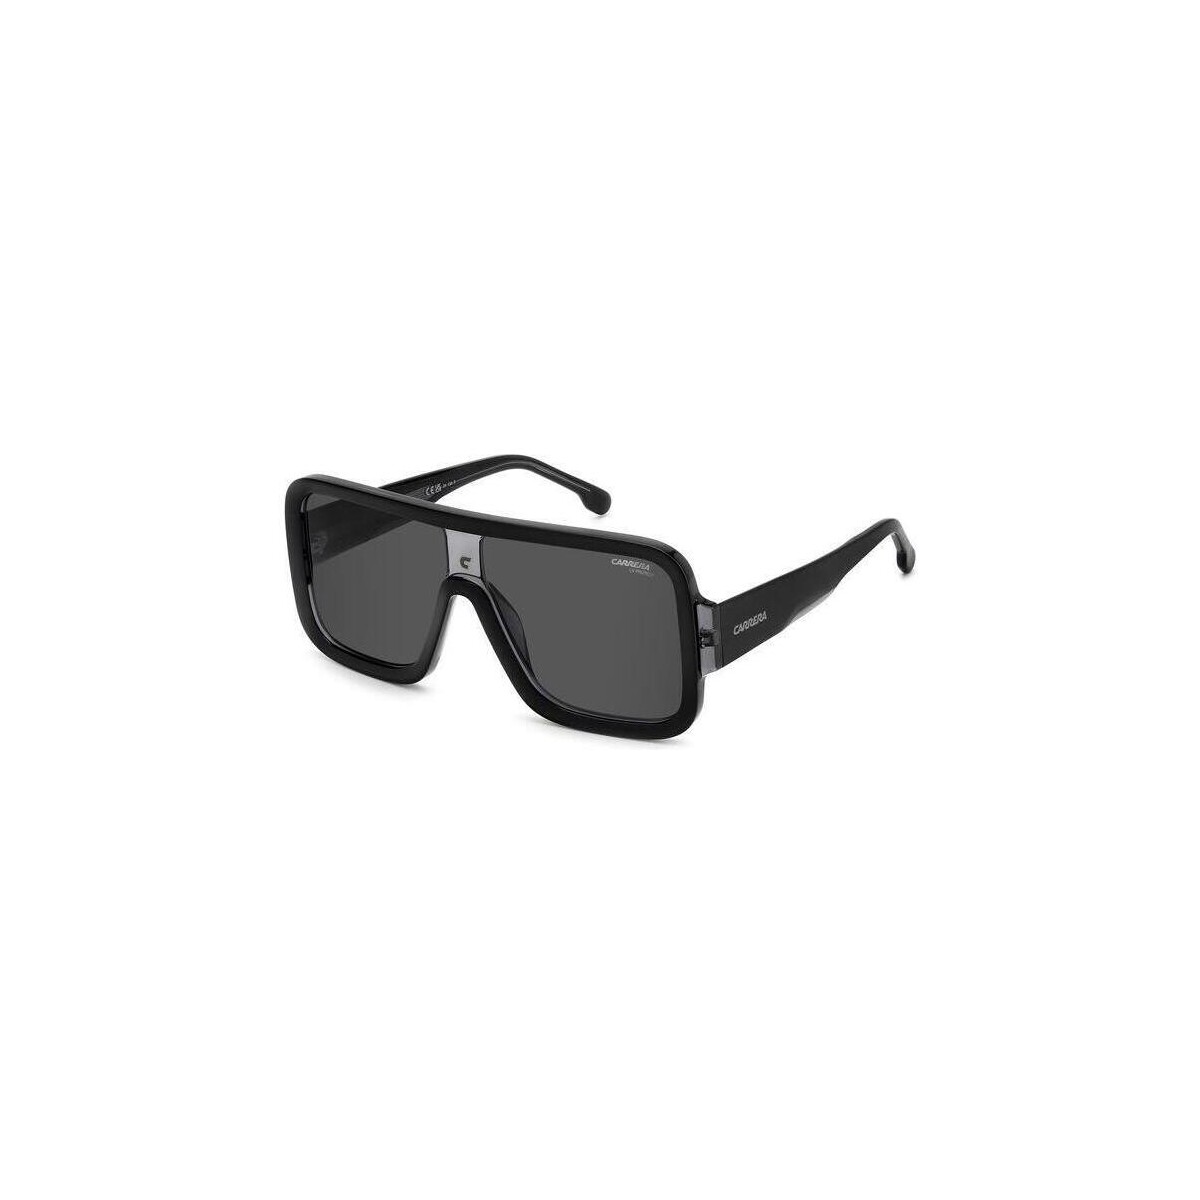 Orologi & Gioielli Occhiali da sole Carrera FLAGLAB 14 Occhiali da sole, Grigio scuro/Grigio, 62 mm Altri